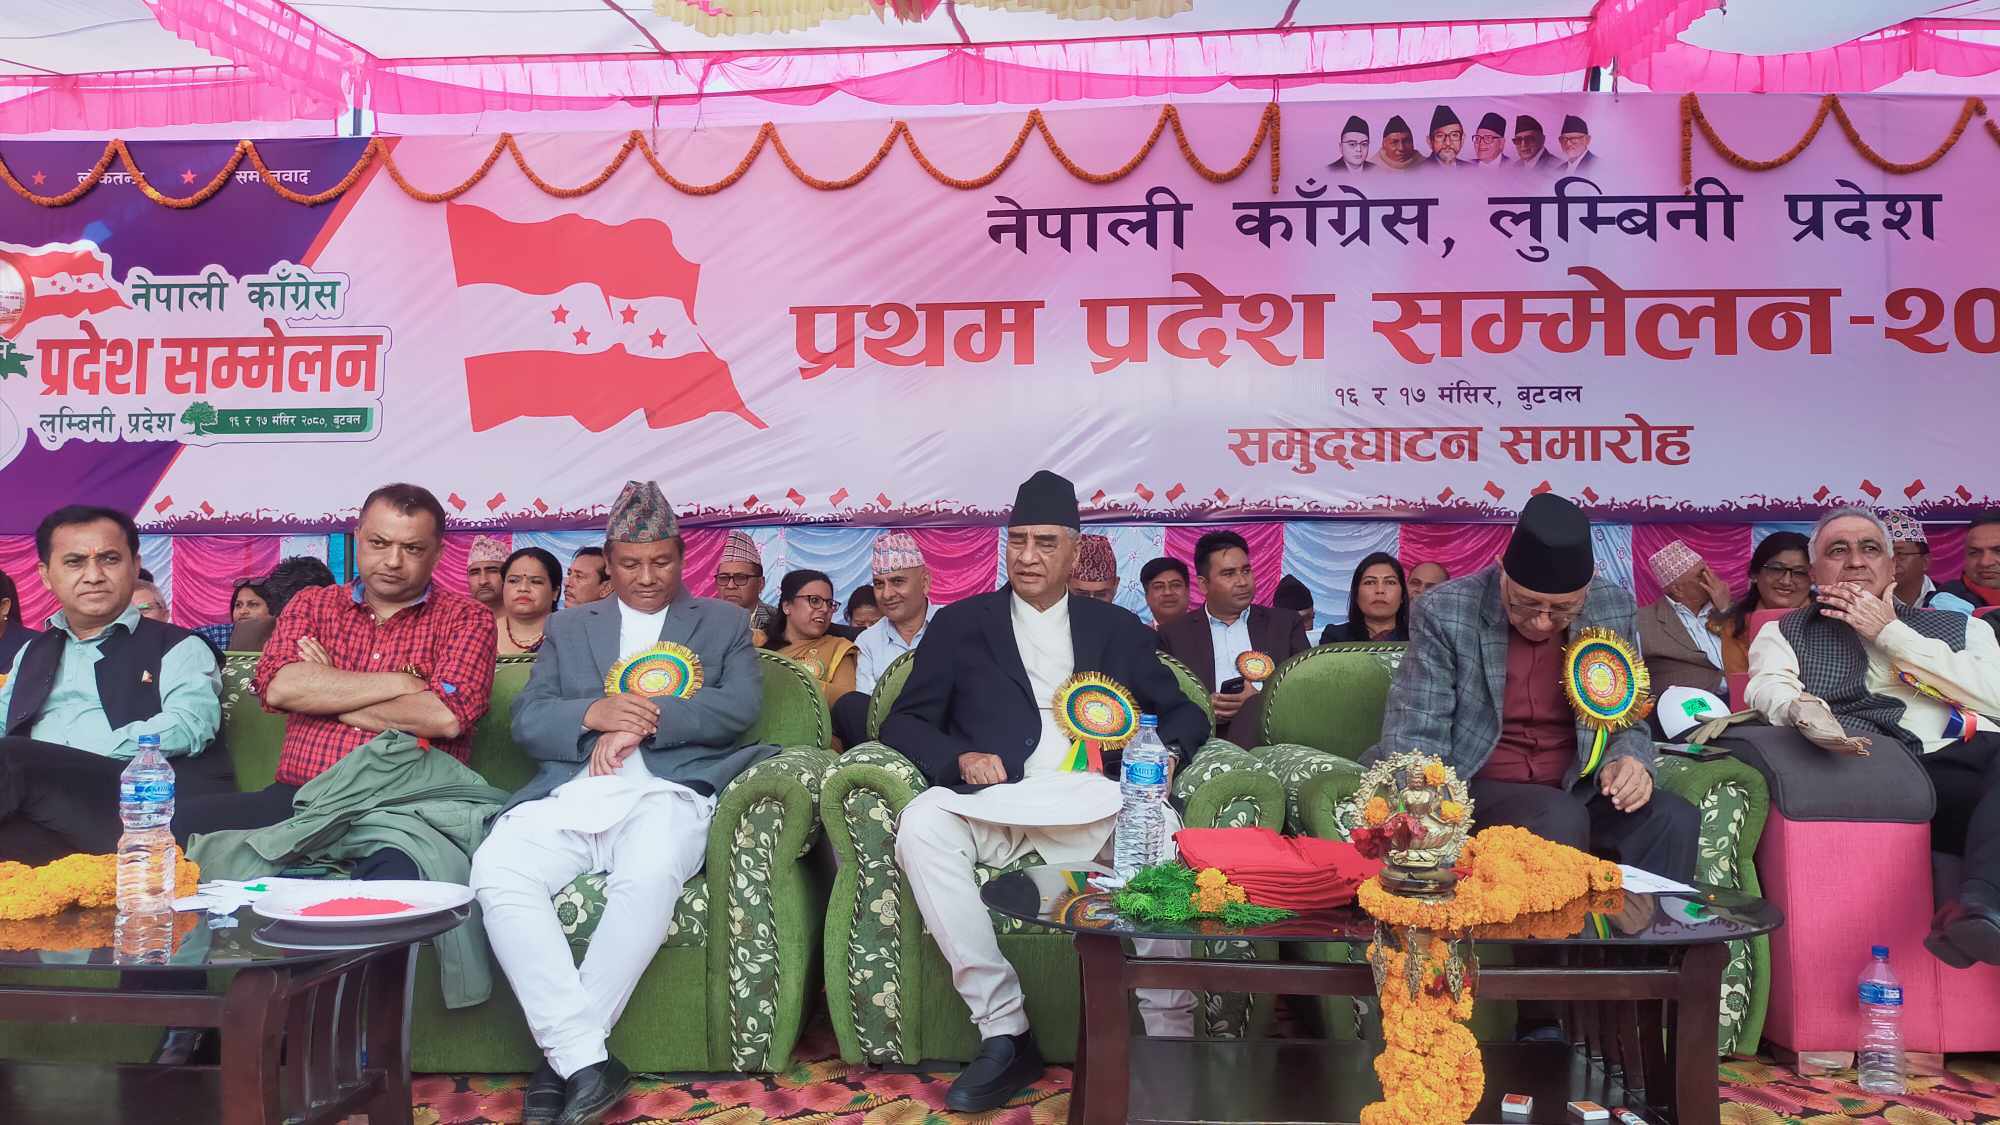 कांग्रेस लुम्बिनीको प्रदेश सम्मेलनमा इतर समूहका नेताहरू खनिए संस्थापन पक्षसँग